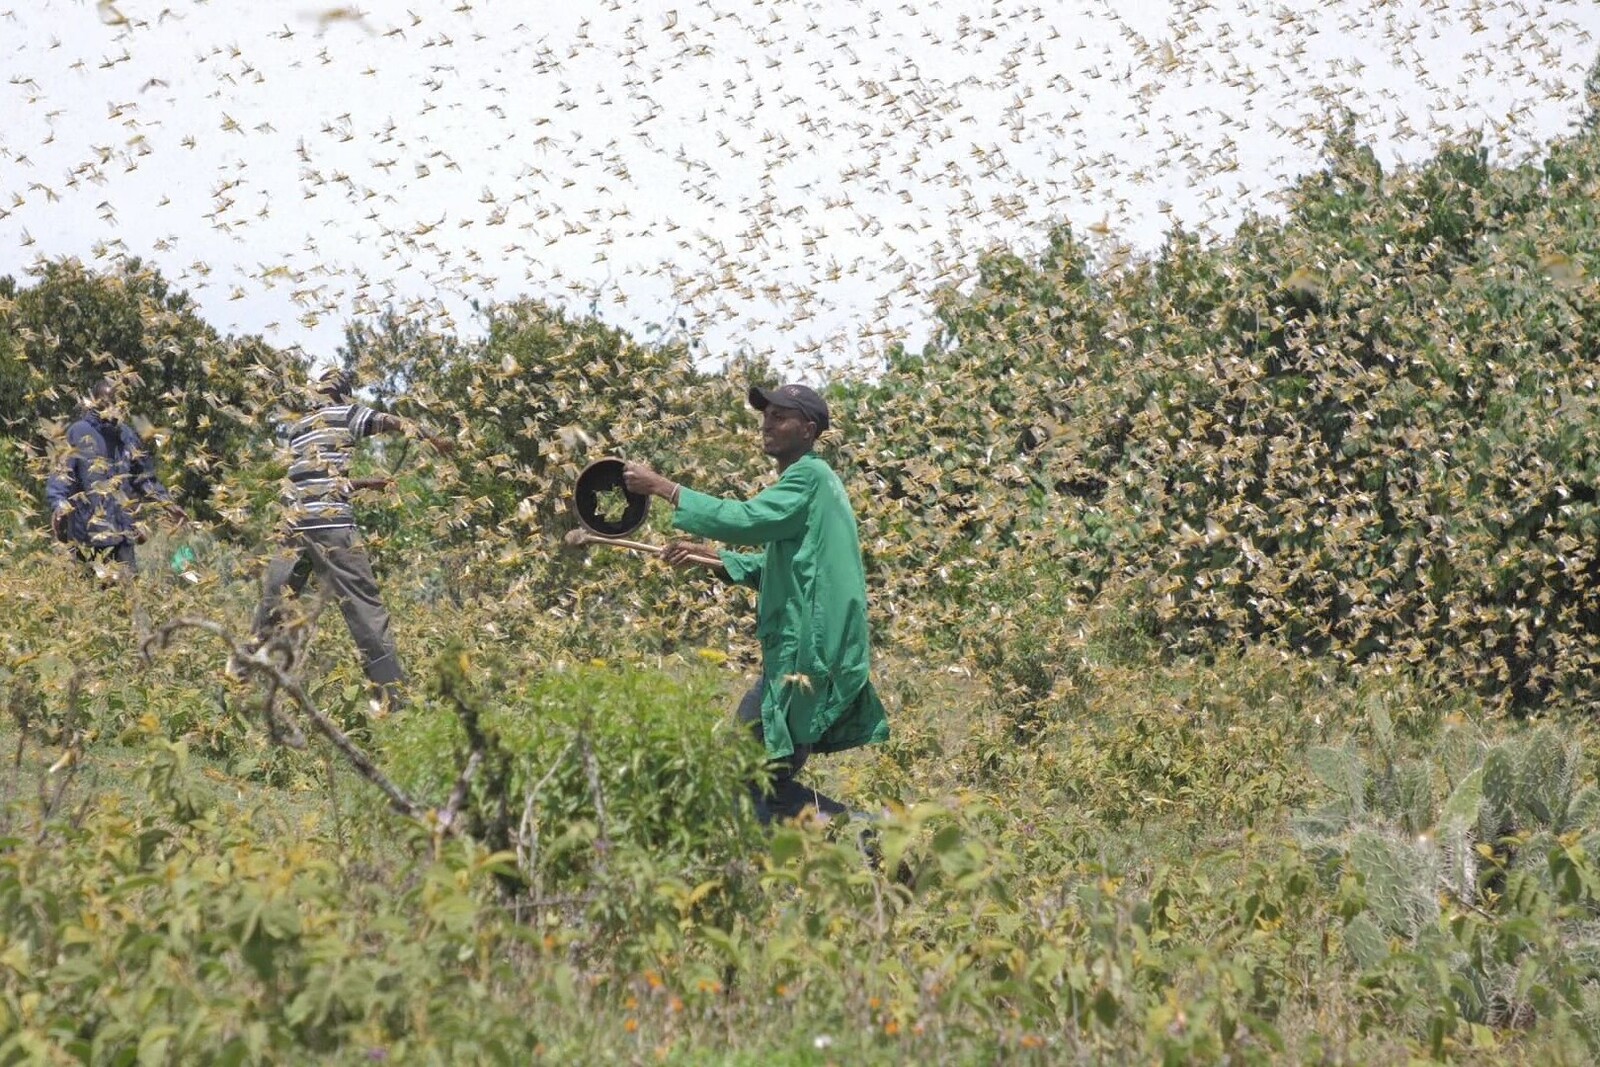 Farmer in Kenia versuchen, einen Heuschreckenschwarm von ihren Feldern zu vertreiben